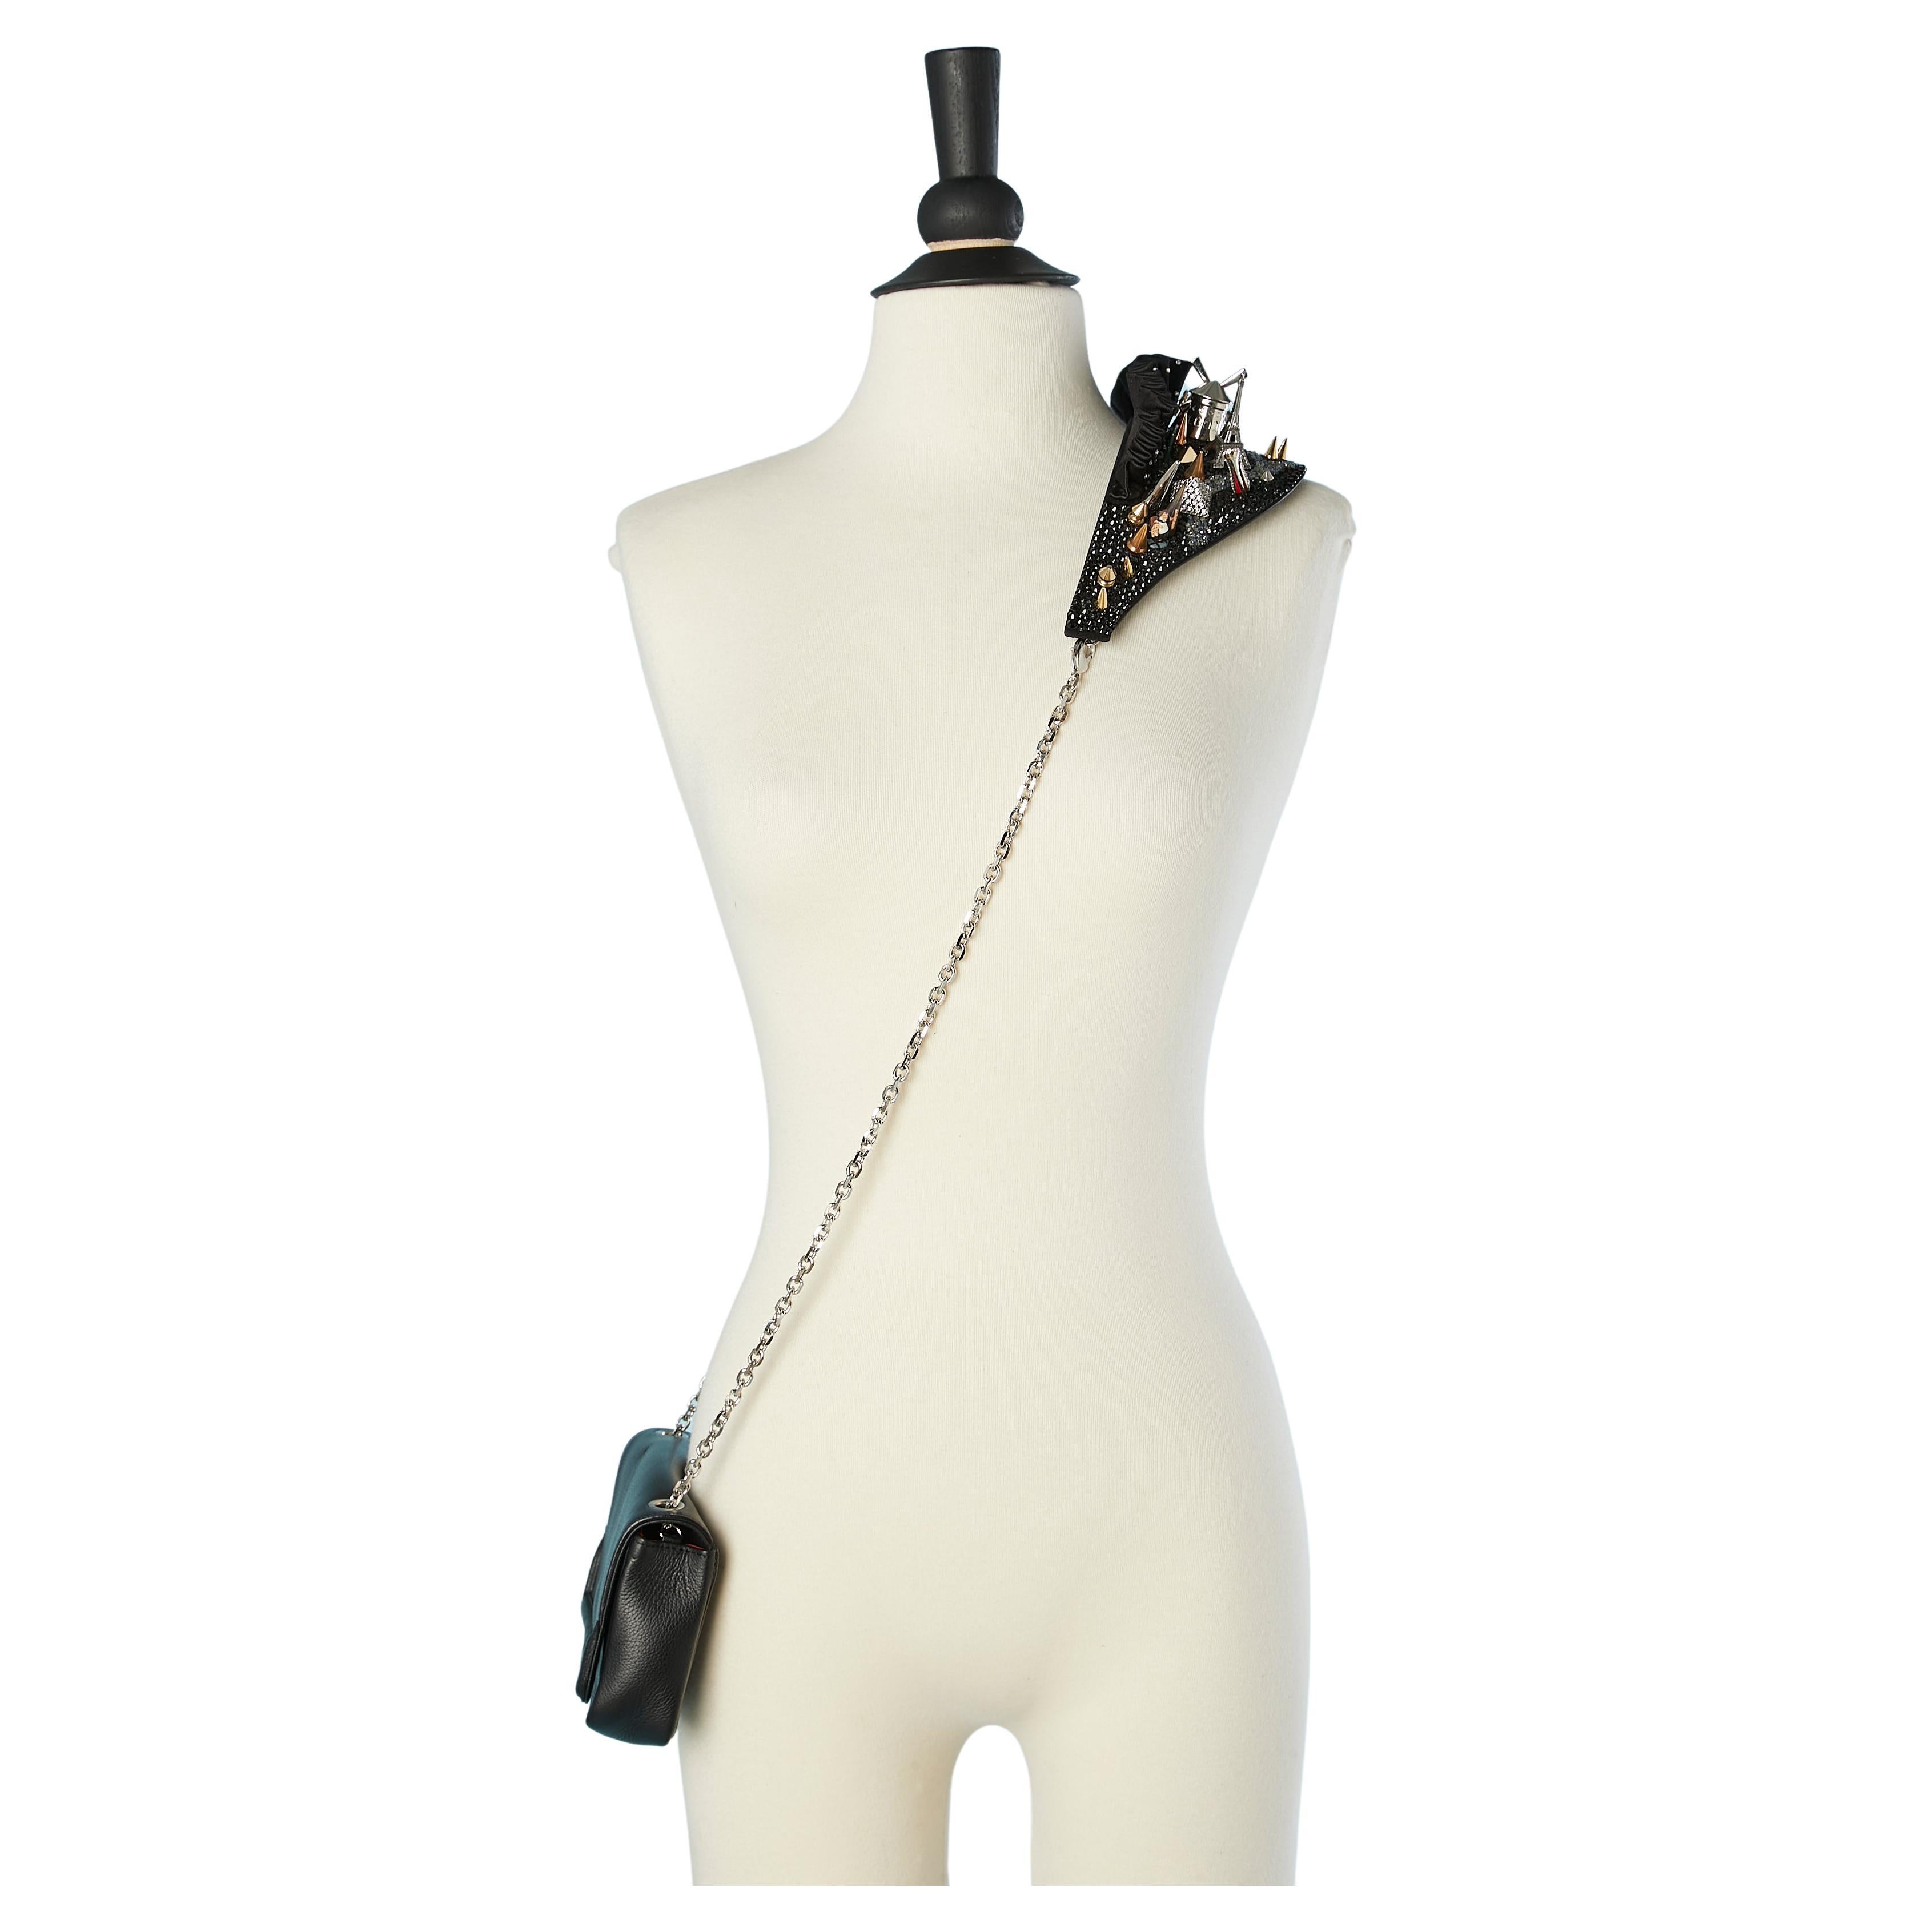 Artemis leather evening bag with Paris site-sight shoulder strap C. Louboutin 